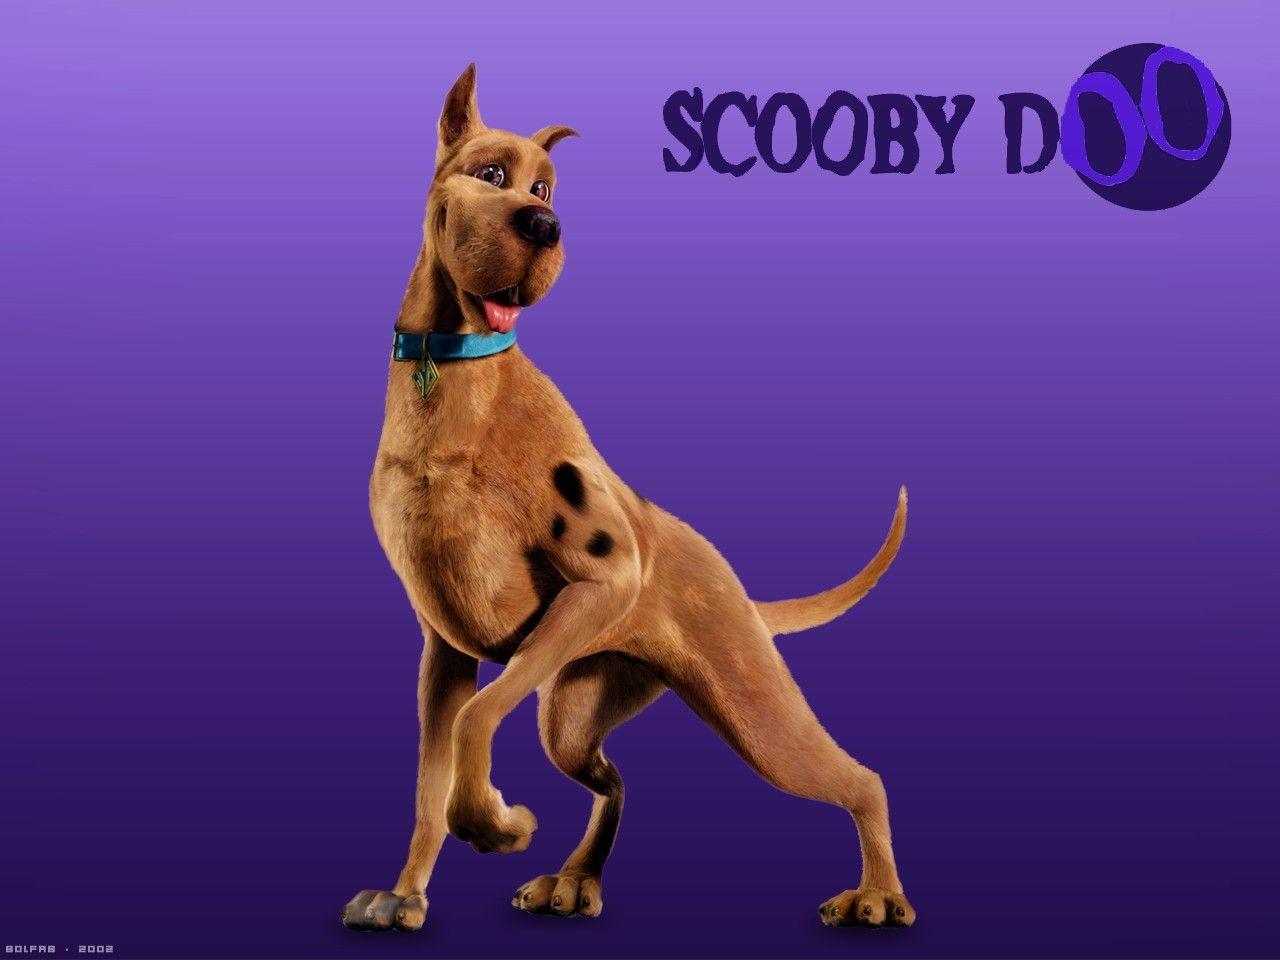 scooby doo Computer Wallpaper, Desktop Background 1280x960 Id